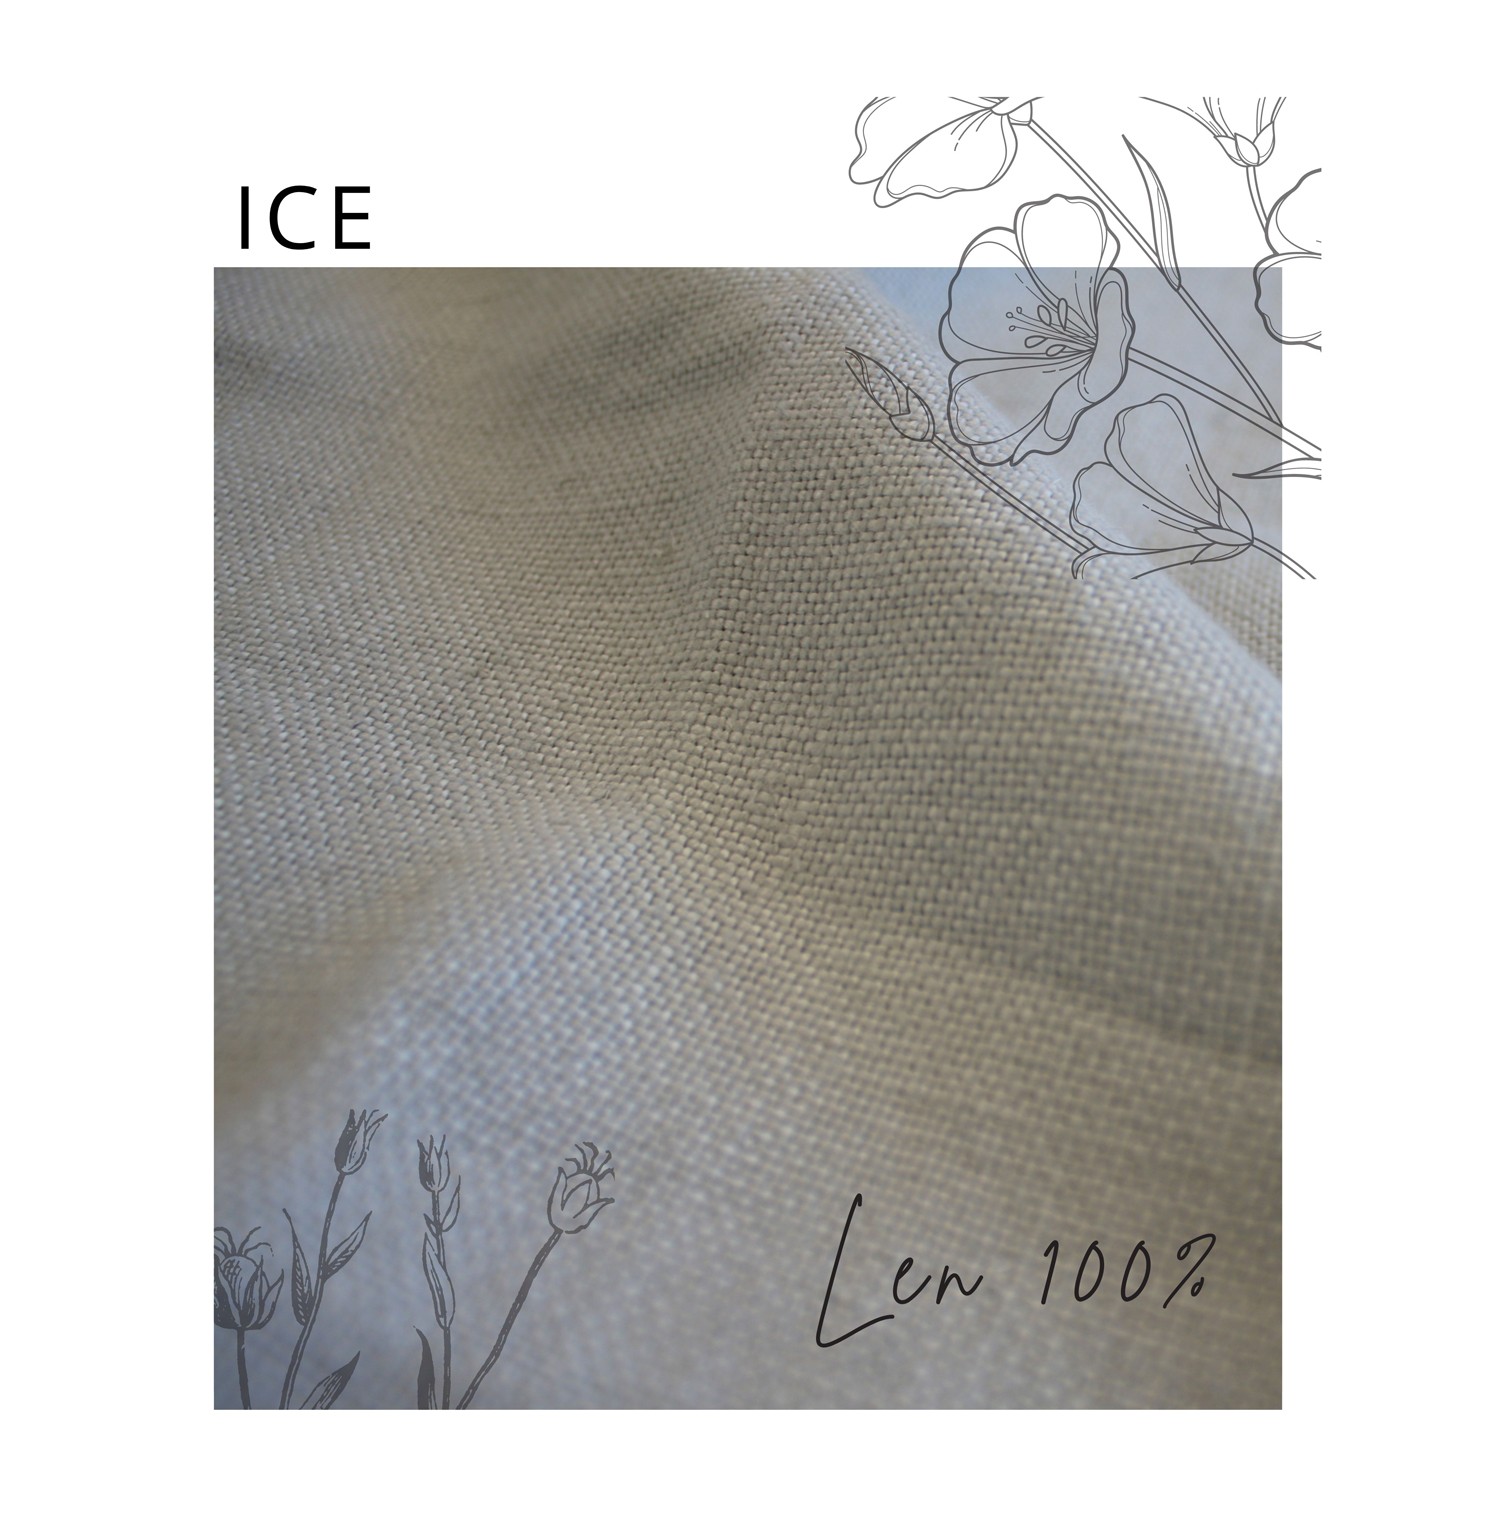 Ice Len 100% (+1200 zł)